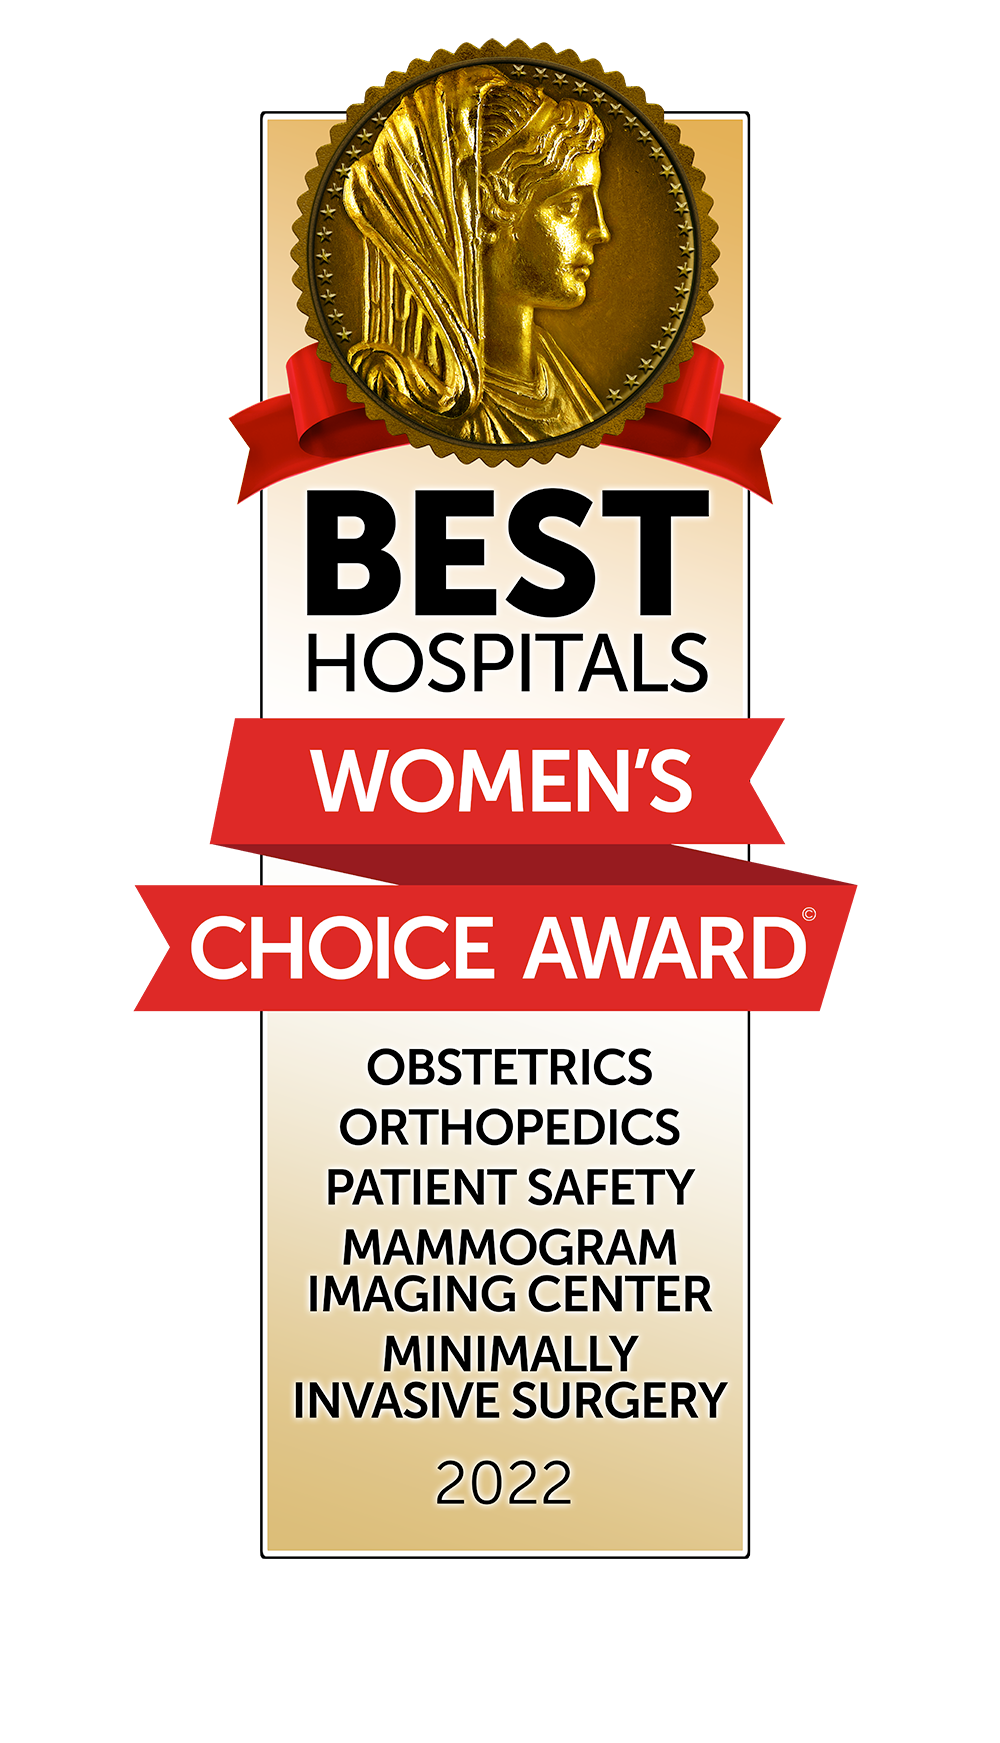 Best Hospitals Women's Choice Award